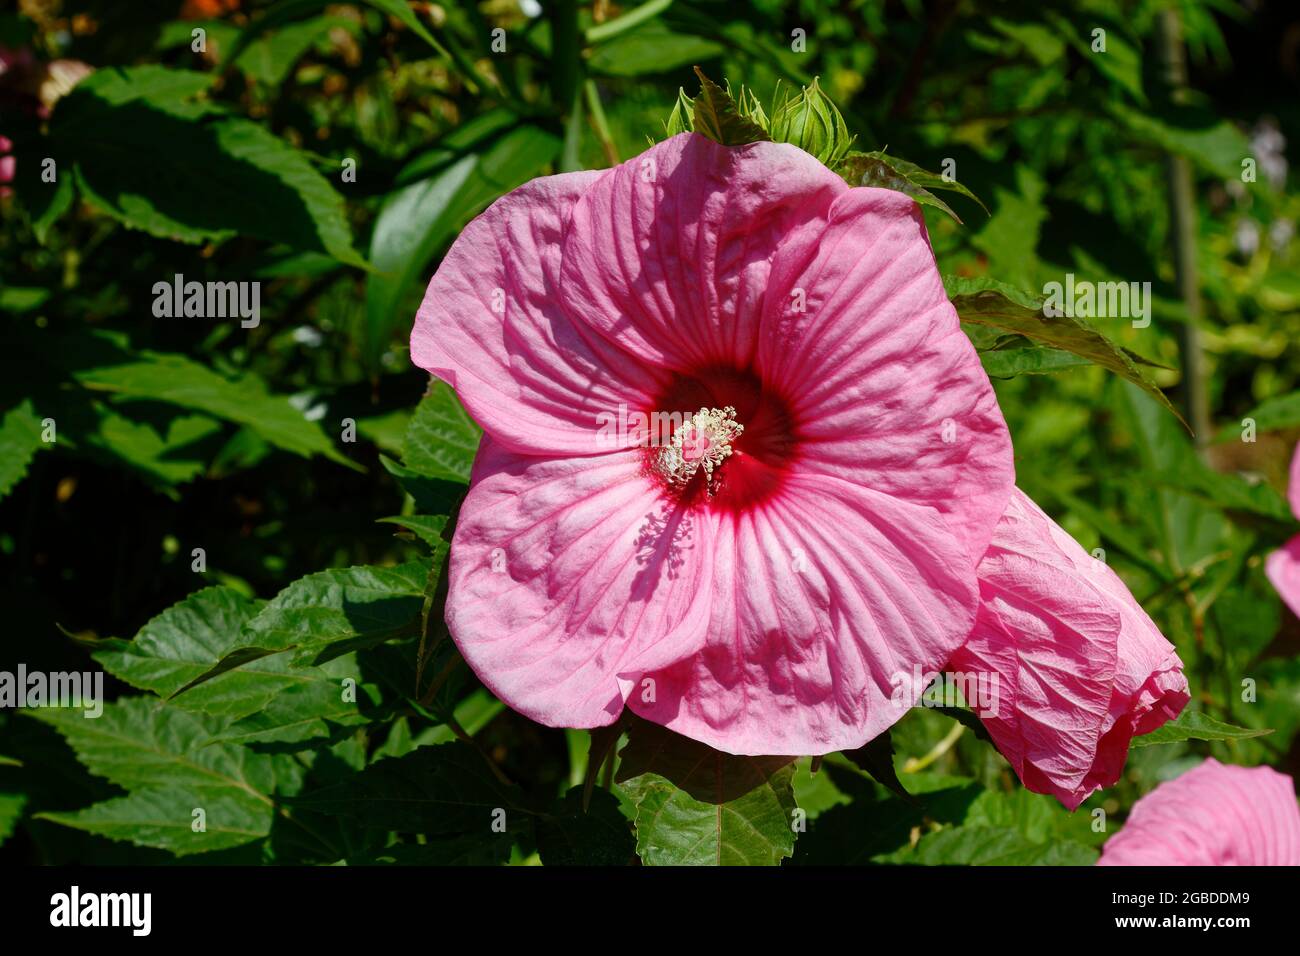 hibiscus rose, gros plan, fond vert, jardin, fleur cultivée, Arbuste, plante, Malvaceae, nature, PA, Pennsylvanie, États-Unis, RP Banque D'Images